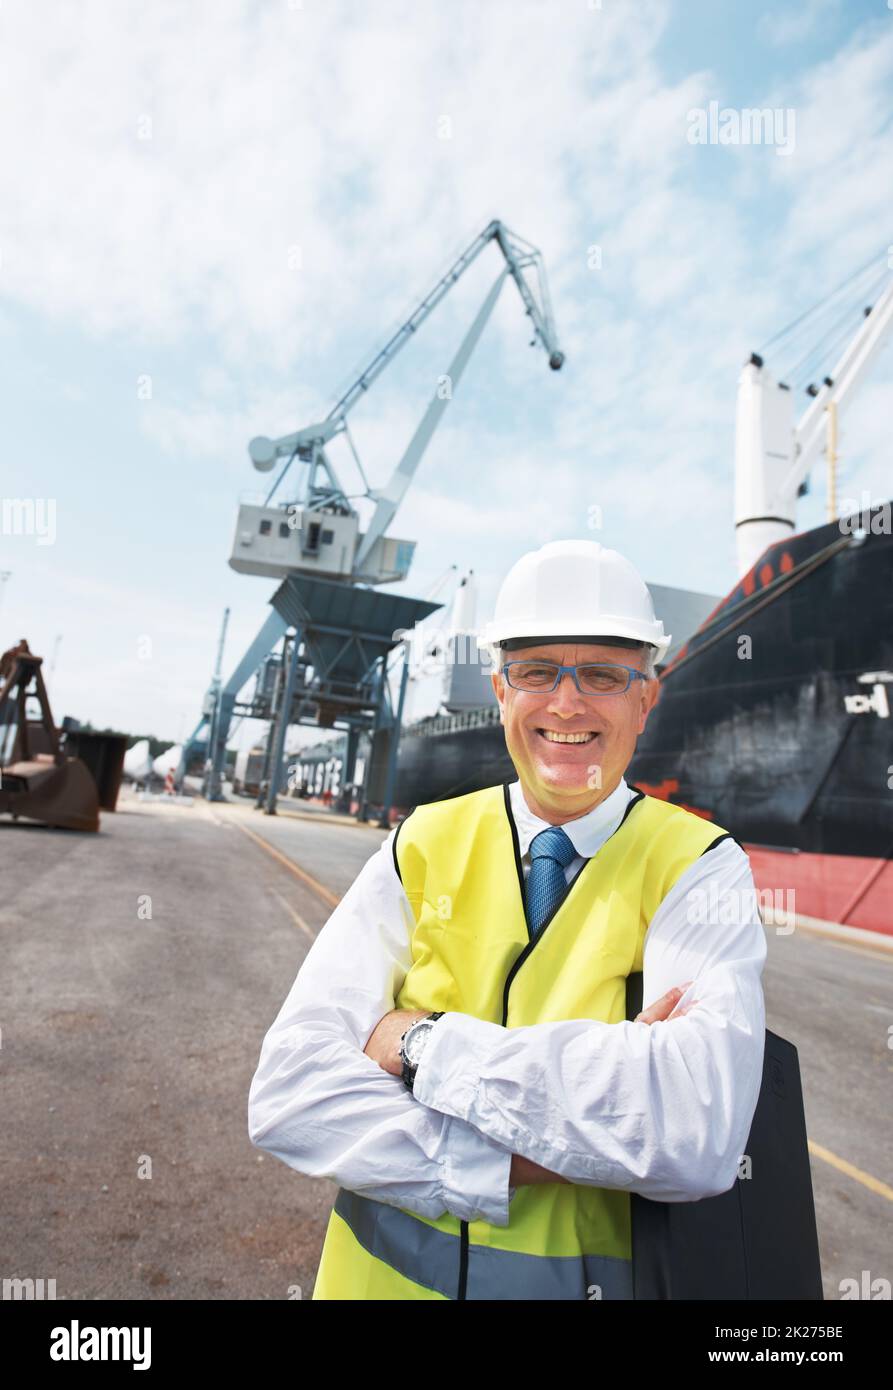 Mon travail m'apporte une immense joie.Portrait d'un travailleur au quai debout dans le port au milieu de l'activité de l'industrie du transport maritime. Banque D'Images